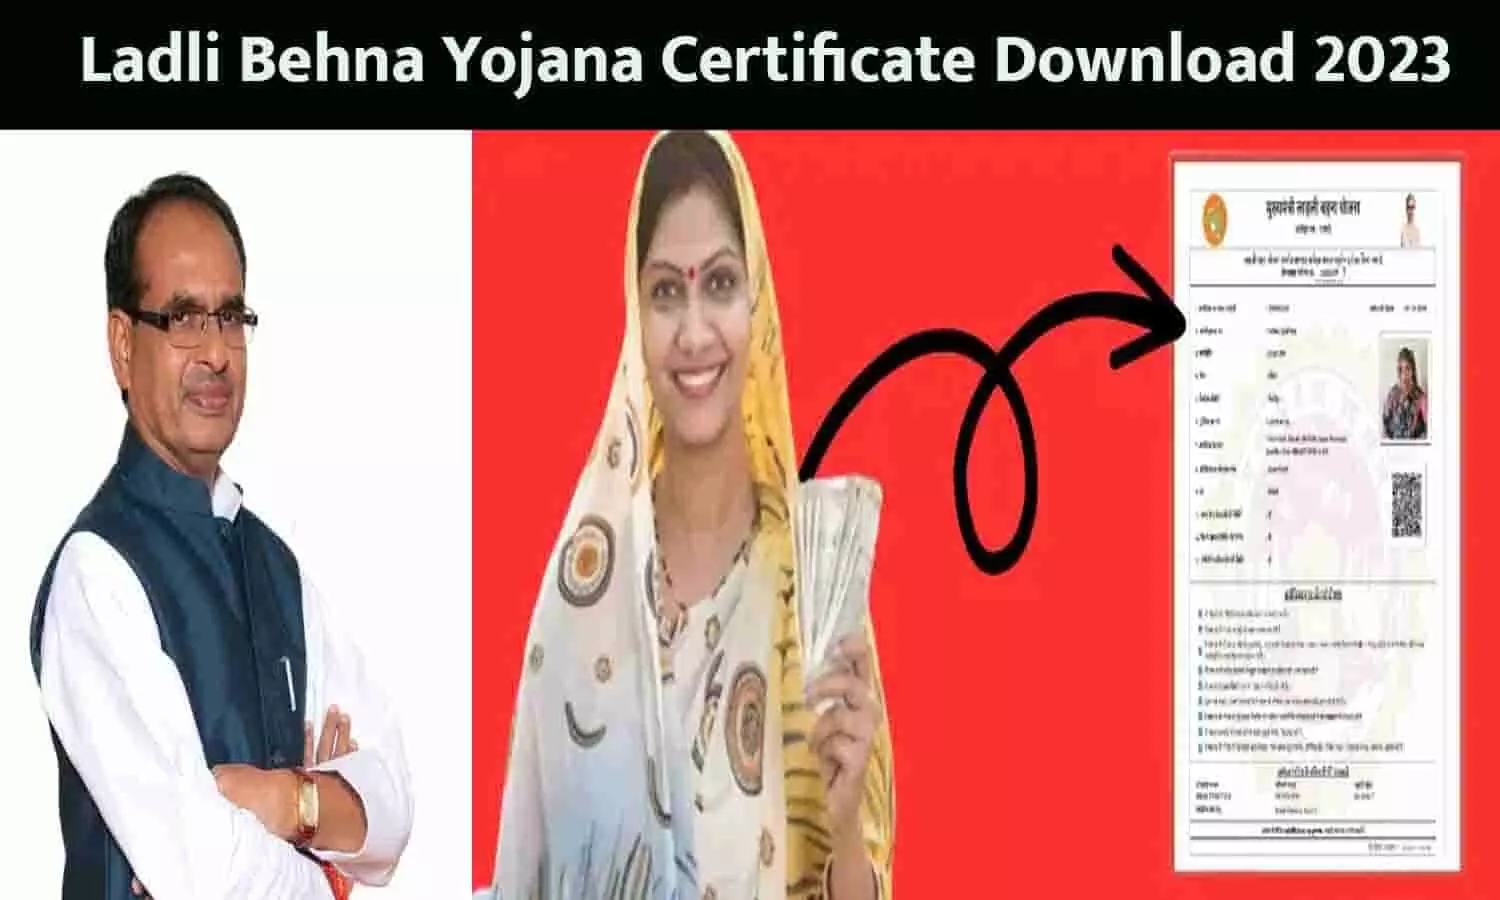 Ladli Behna Yojana Certificate Download Kaise Kare: 1000 रूपए अकाउंट में आने के बाद लाड़ली बहना योजना सर्टिफिकेट डाउनलोड करे 2023